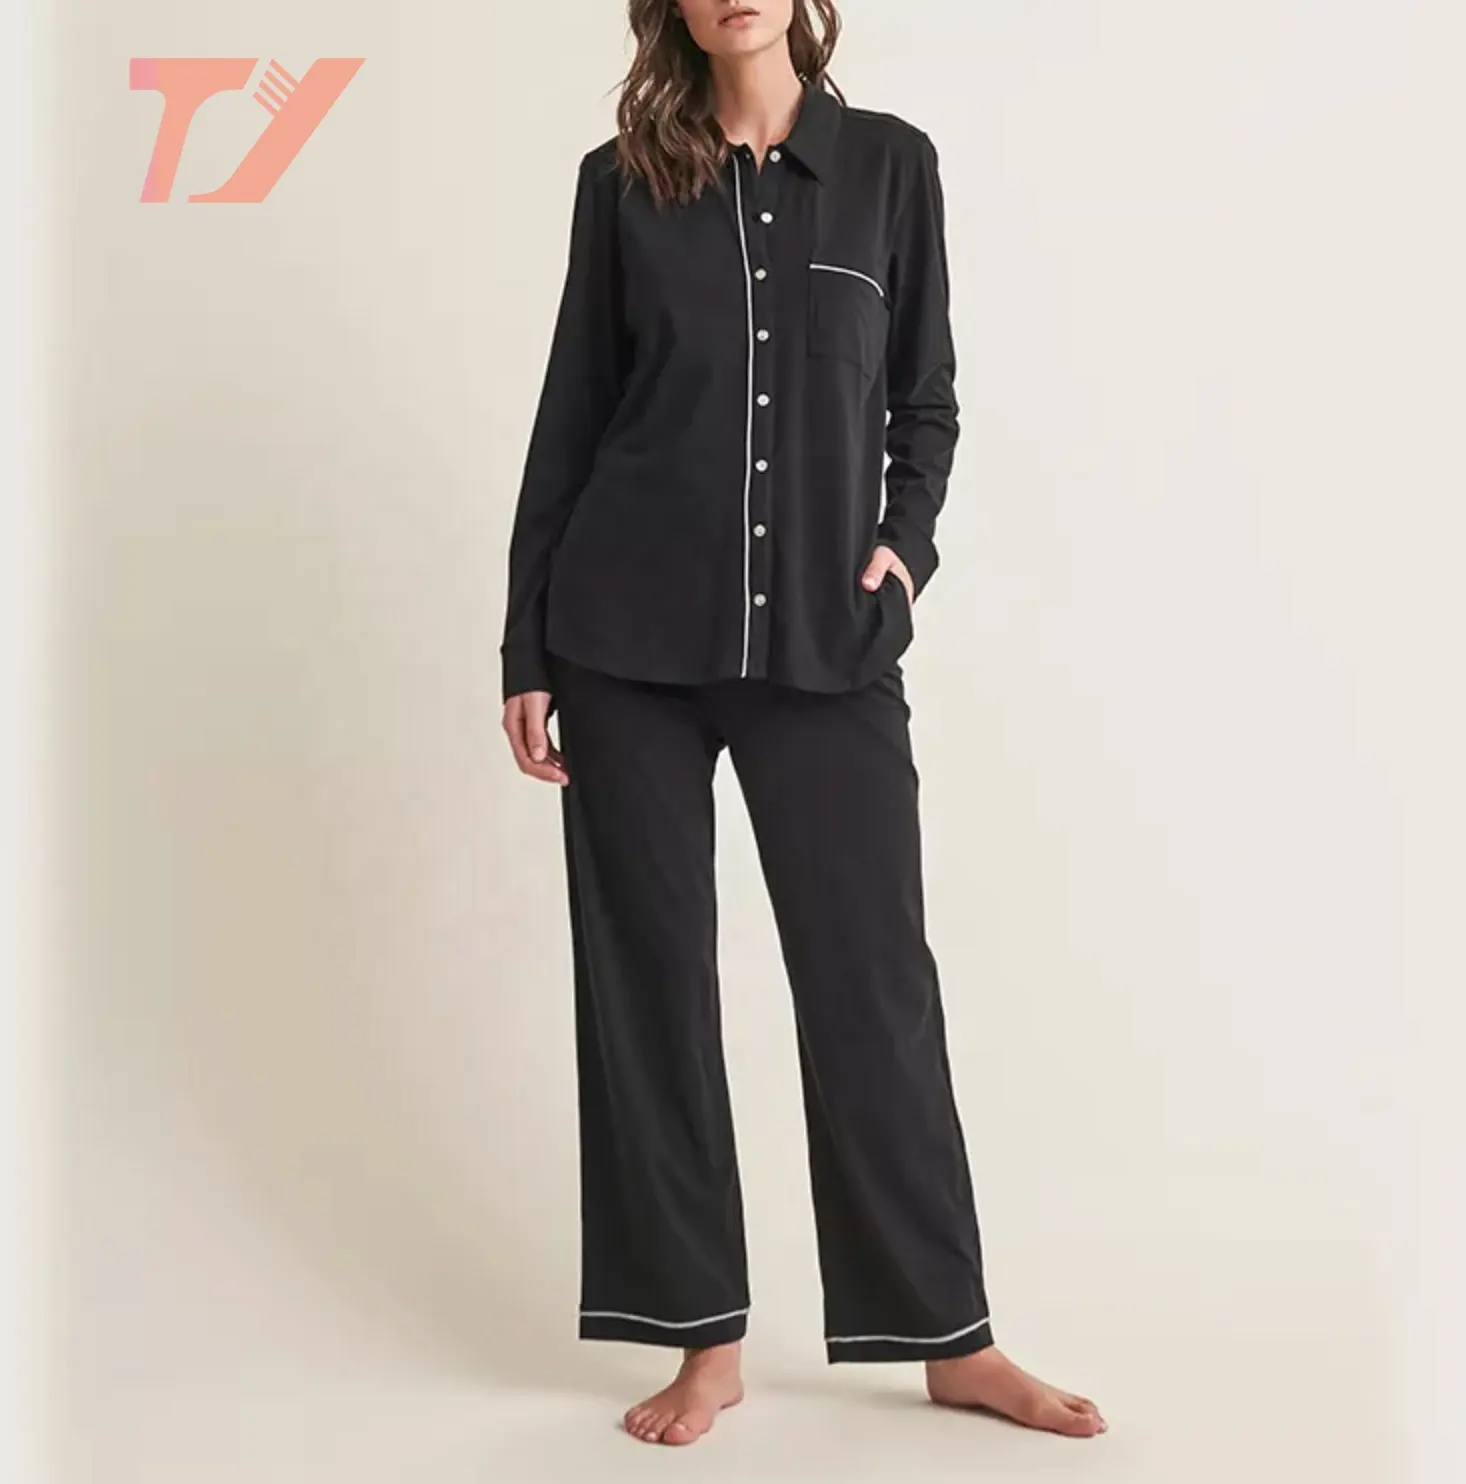 Vrouwen Nachtkleding Soft Touch Comfortabele Bamboevezel Vrouw Pajama Set Nachtkleding 2 Stuk Broek Set Pyjama Pijamas Lounge Wear